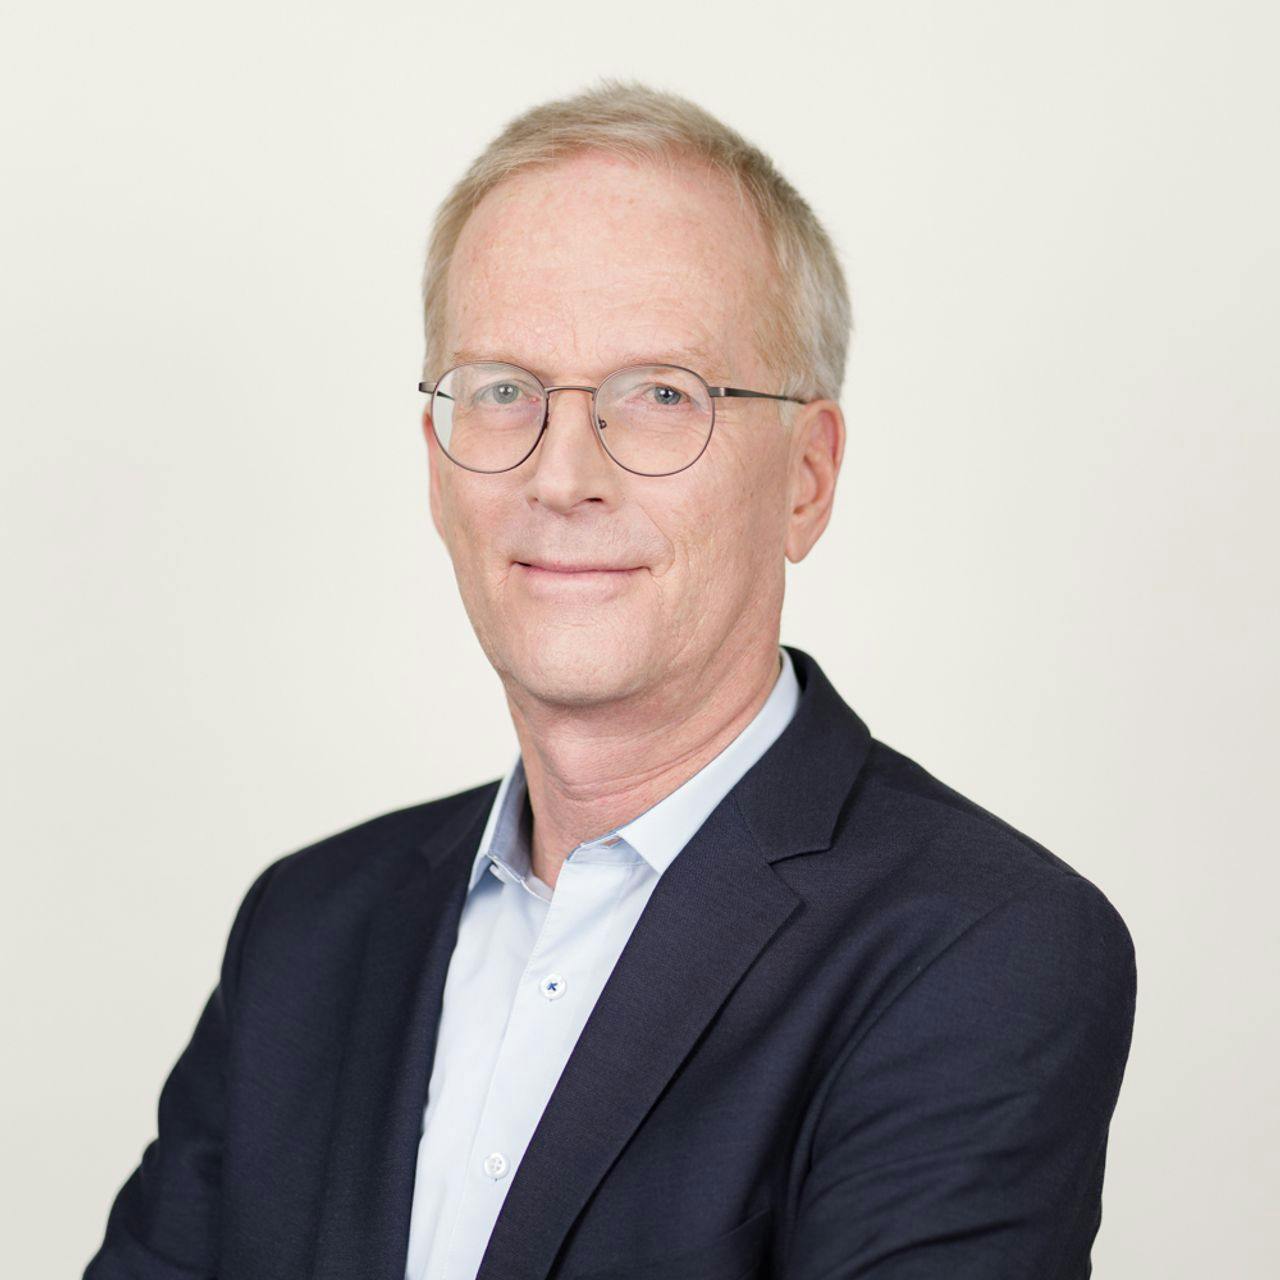 Hans-Peter Diener